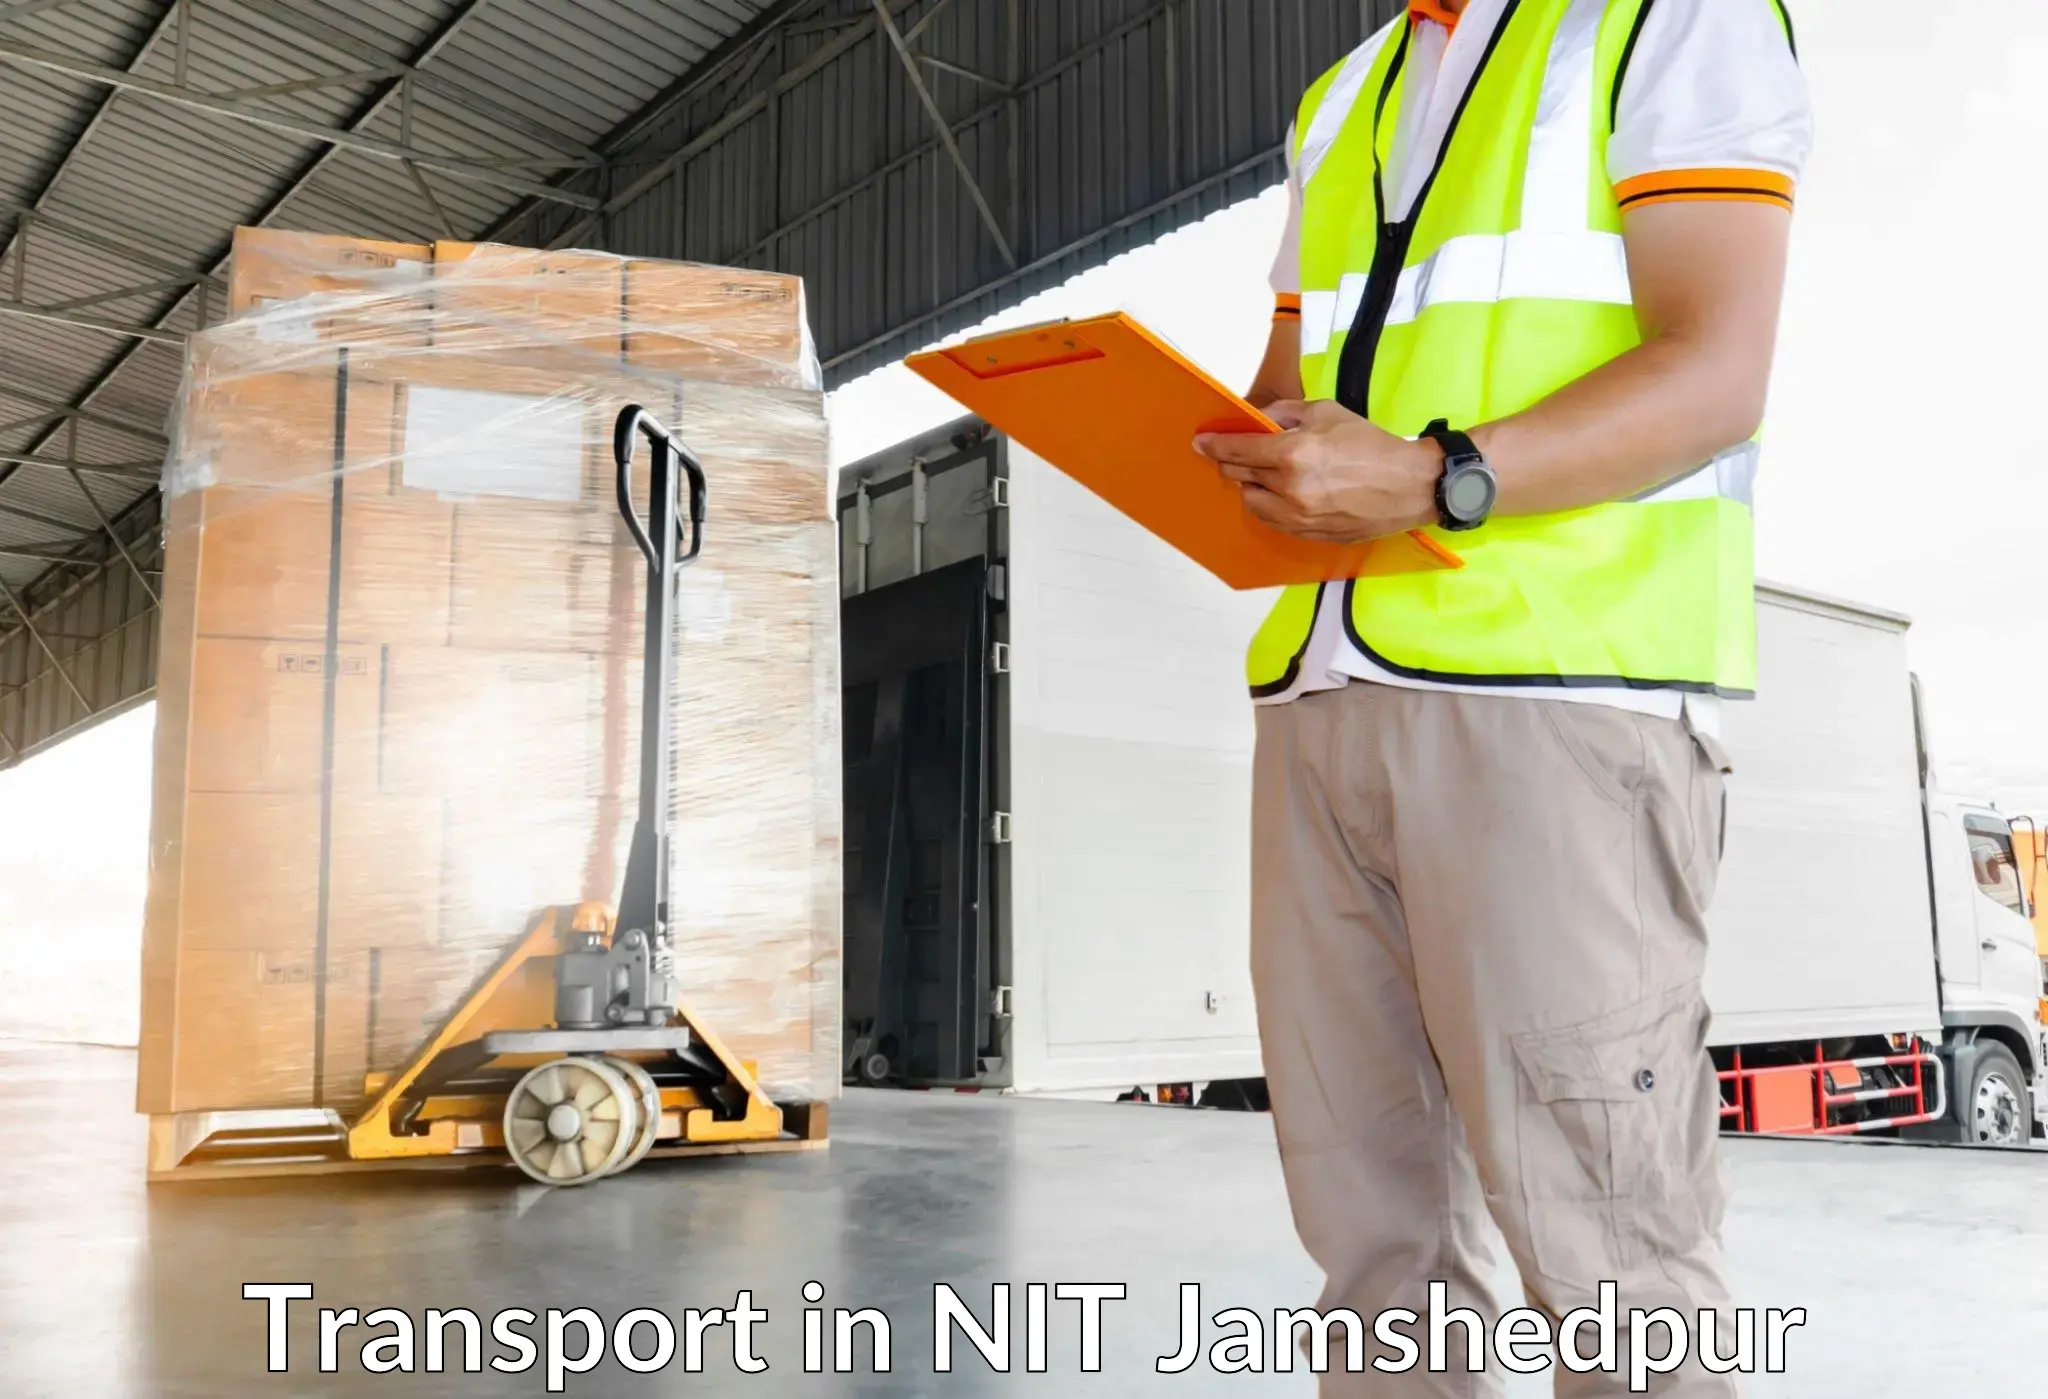 Road transport online services in NIT Jamshedpur